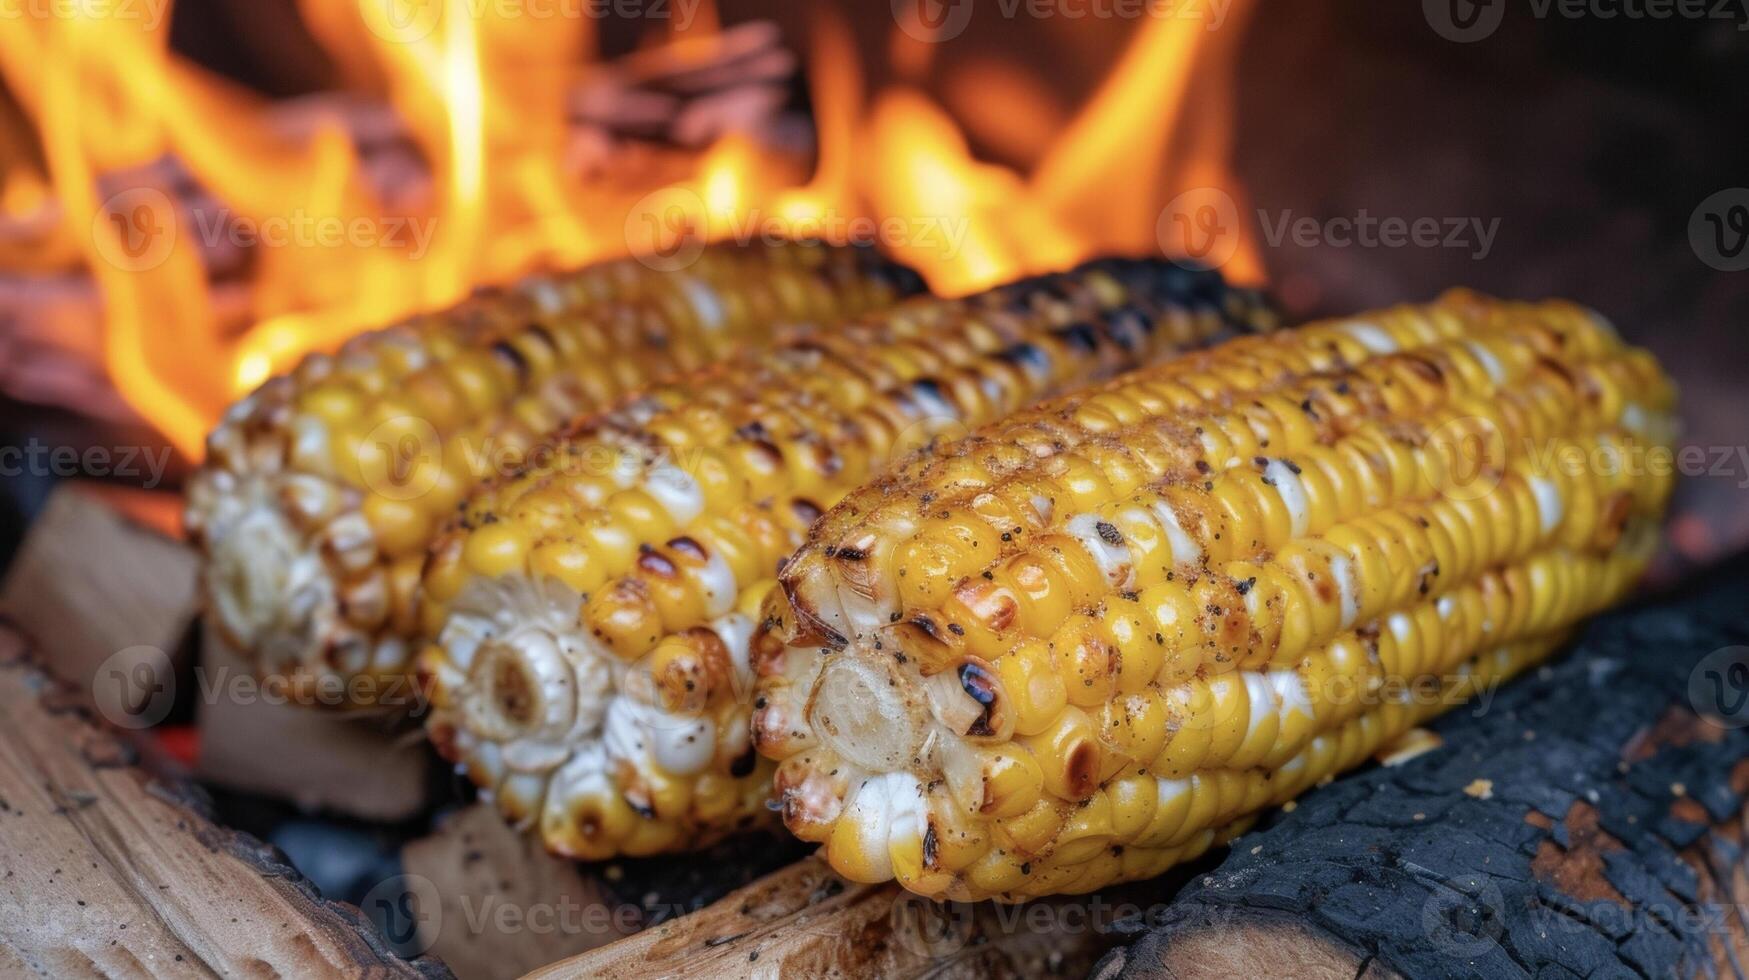 deze knus maïs Aan de maïskolf is een kampvuur favoriete inschrijving en zoet met een licht hint van rokerigheid van wezen gekookt in de haard. geborsteld met toegeeflijk eh en dienen foto